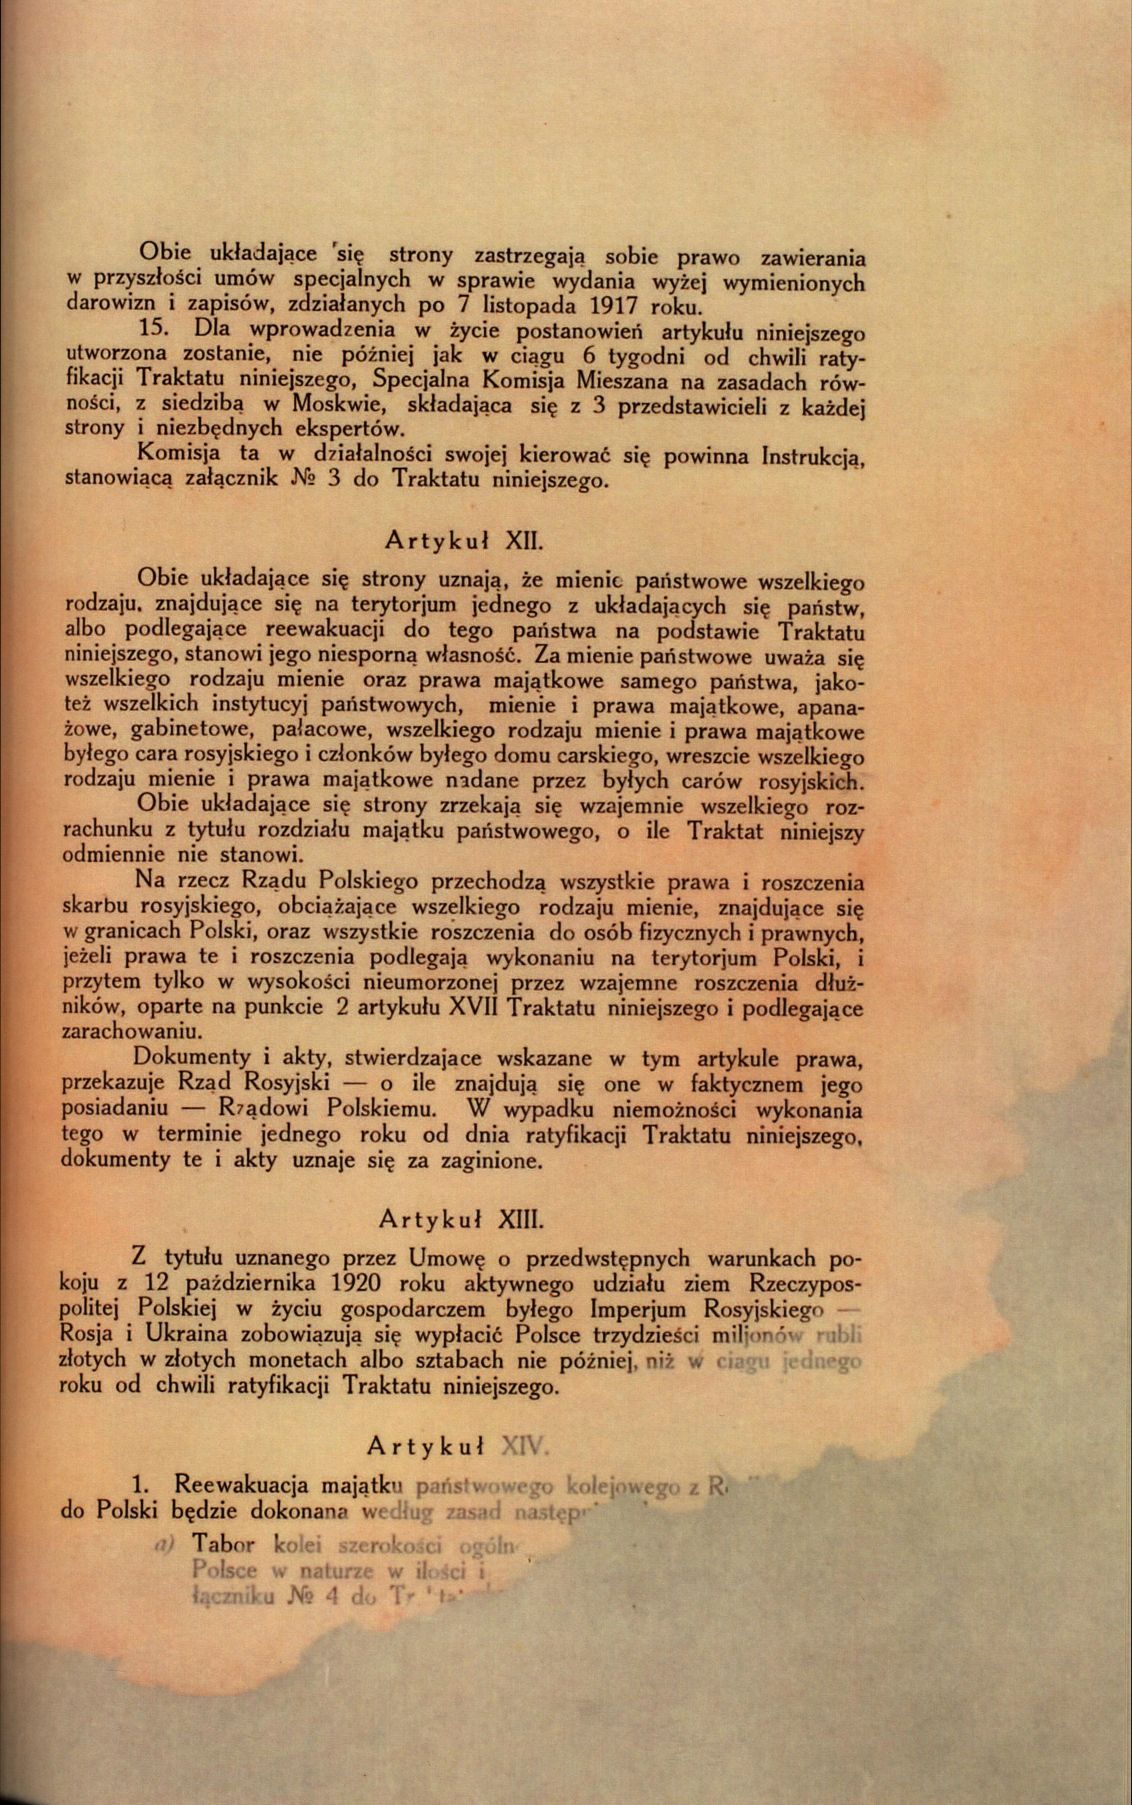 Traktat Pokoju między Polską a Rosją i Ukrainą podpisany w Rydze dnia 18 marca 1921 roku, s. 15, MSZ, sygn. 6739.